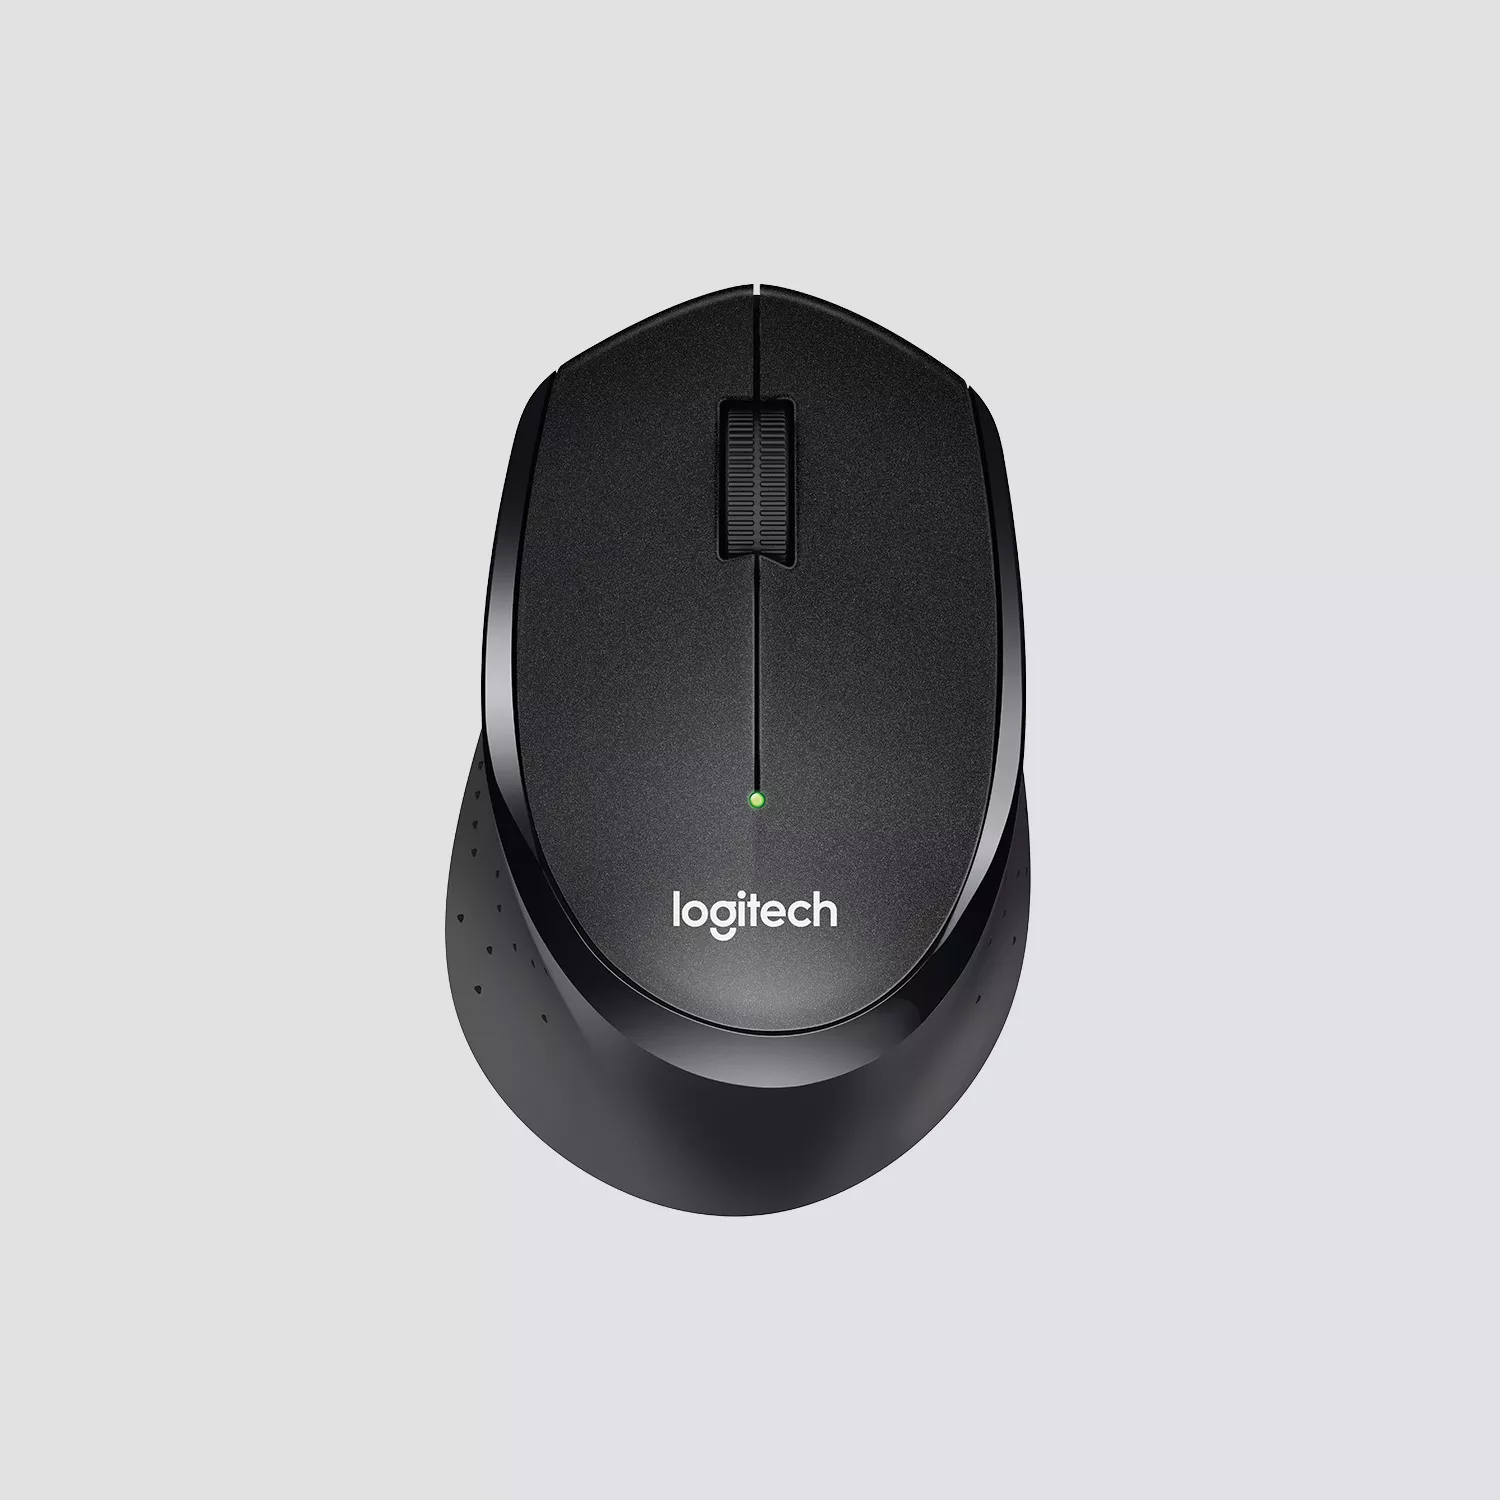 Vente LOGITECH B330 Silent Plus Mouse optical 3 buttons Logitech au meilleur prix - visuel 6